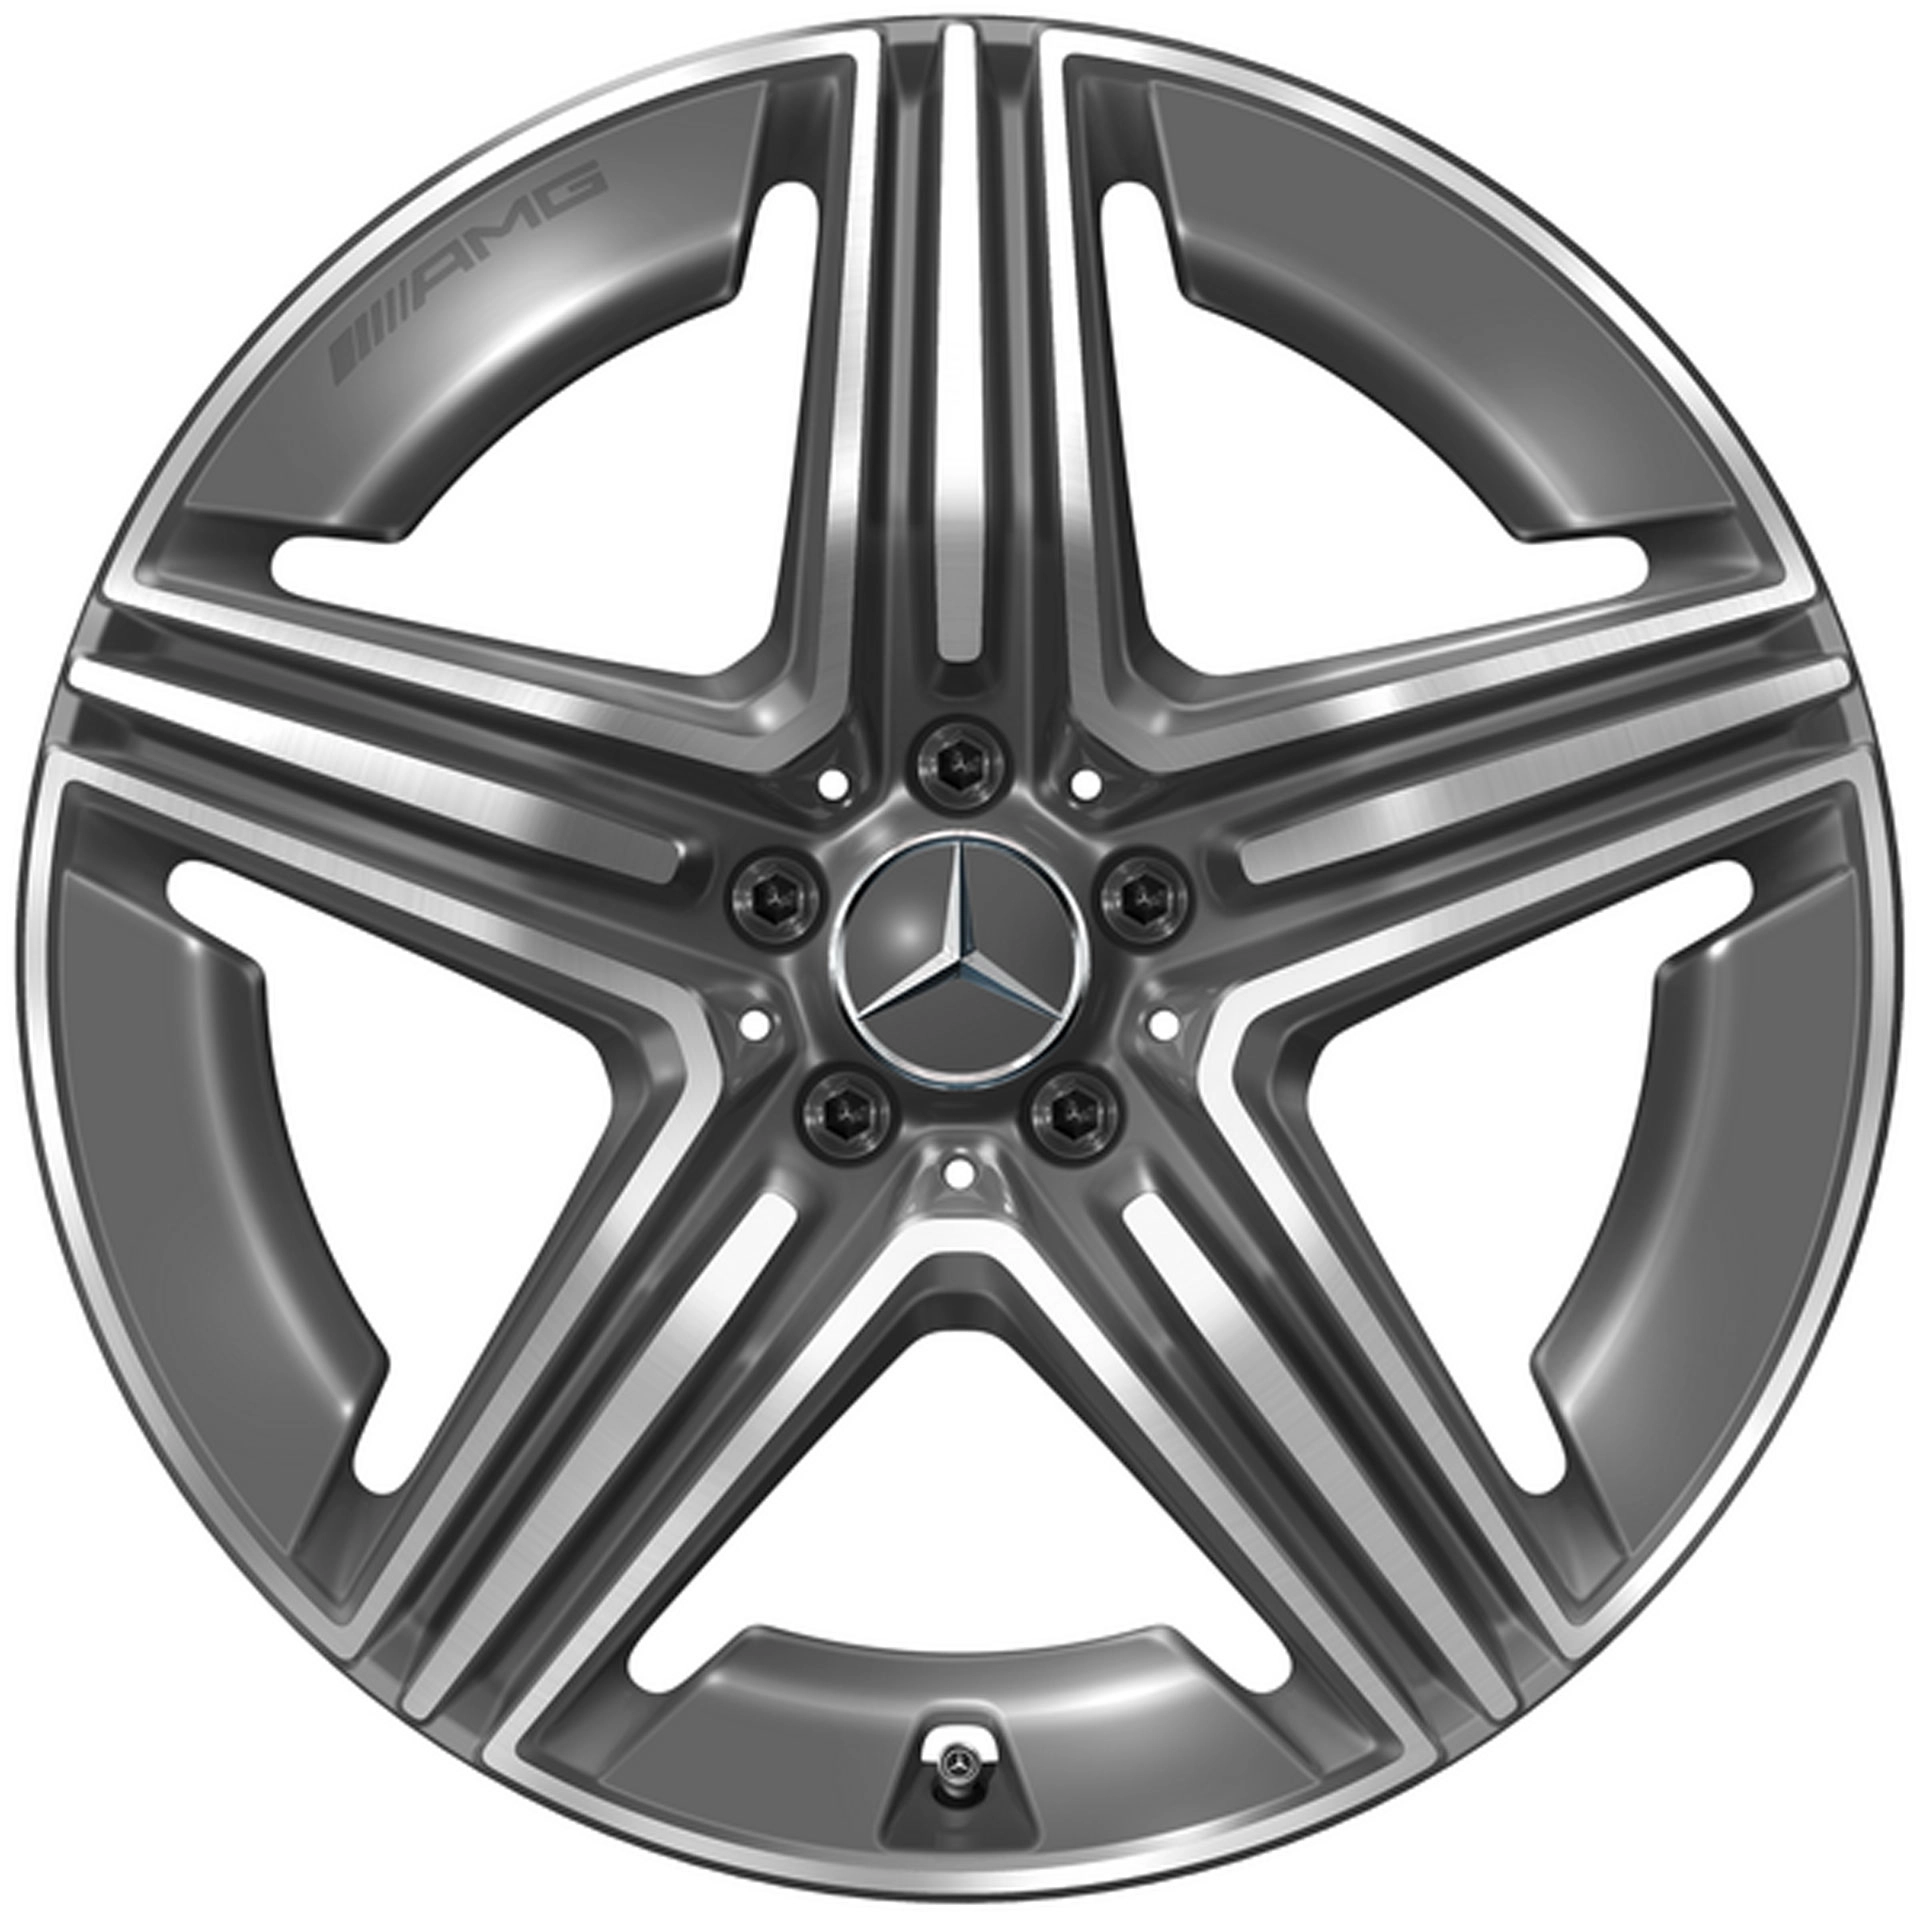 Mercedes-AMG 5-Doppelspeichen-Rad 20 Zoll Leichtmetallfelge GLC X254 grau glanzgedreht A25440107007Y51